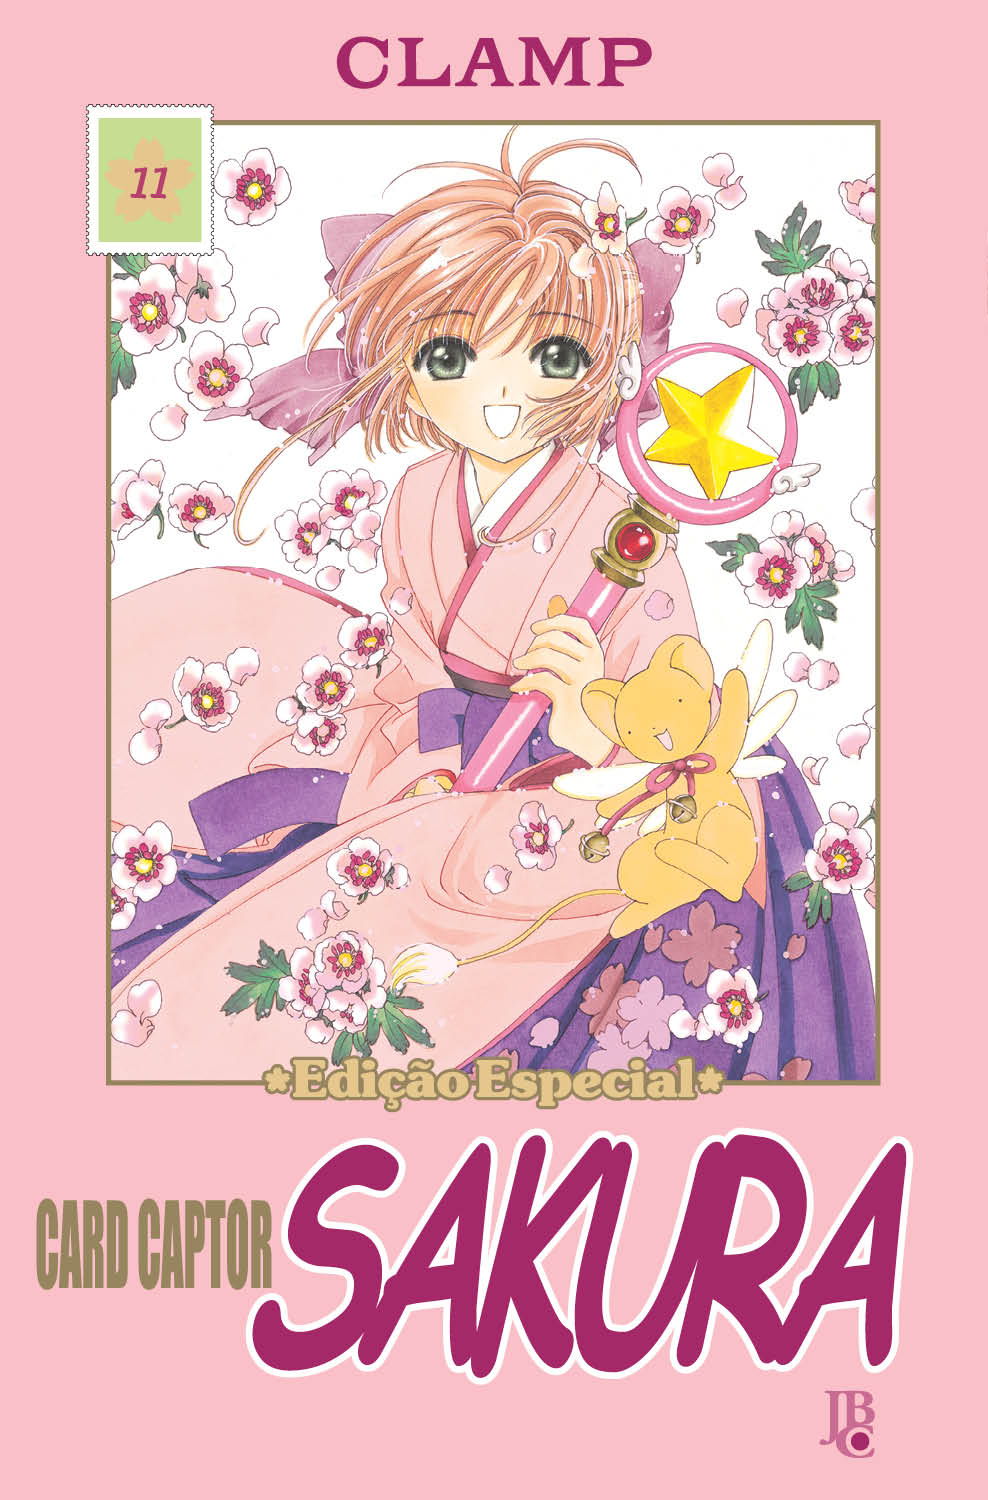 Mangá Cardcaptor Sakura - Clear Card Arc Capítulos - Mangás JBC